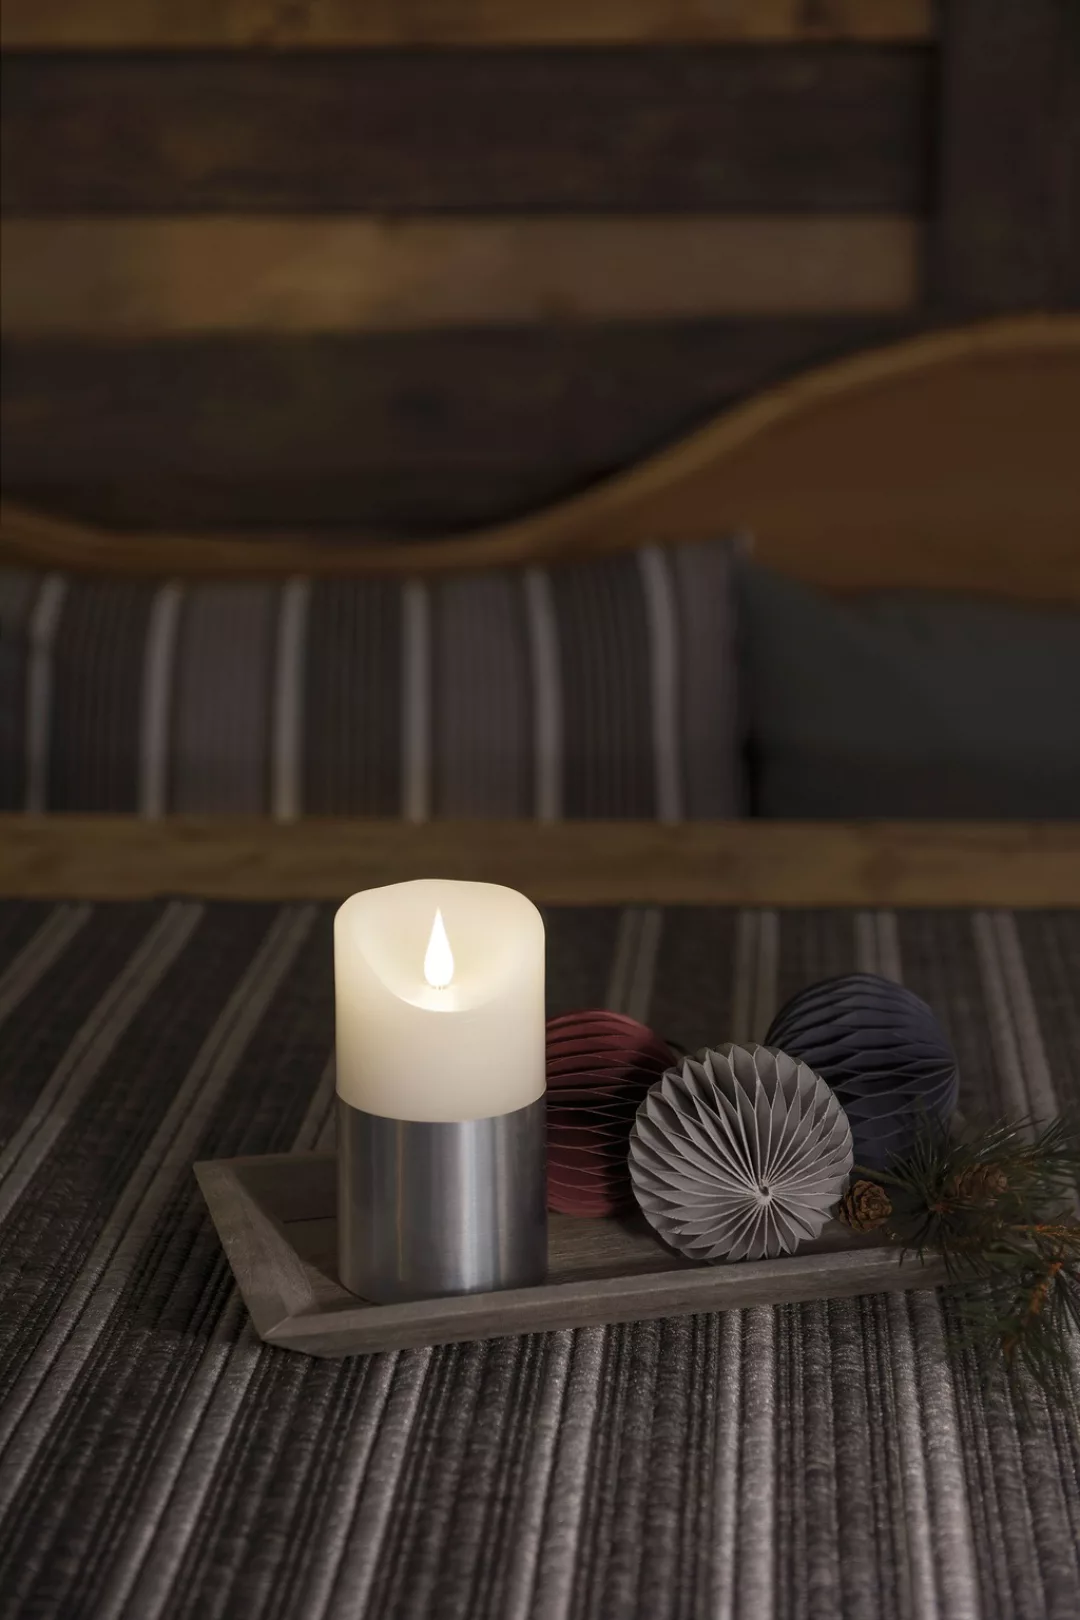 KONSTSMIDE LED-Kerze "Weihnachtsdeko", LED Echtwachskerze, weiß, mit silber günstig online kaufen